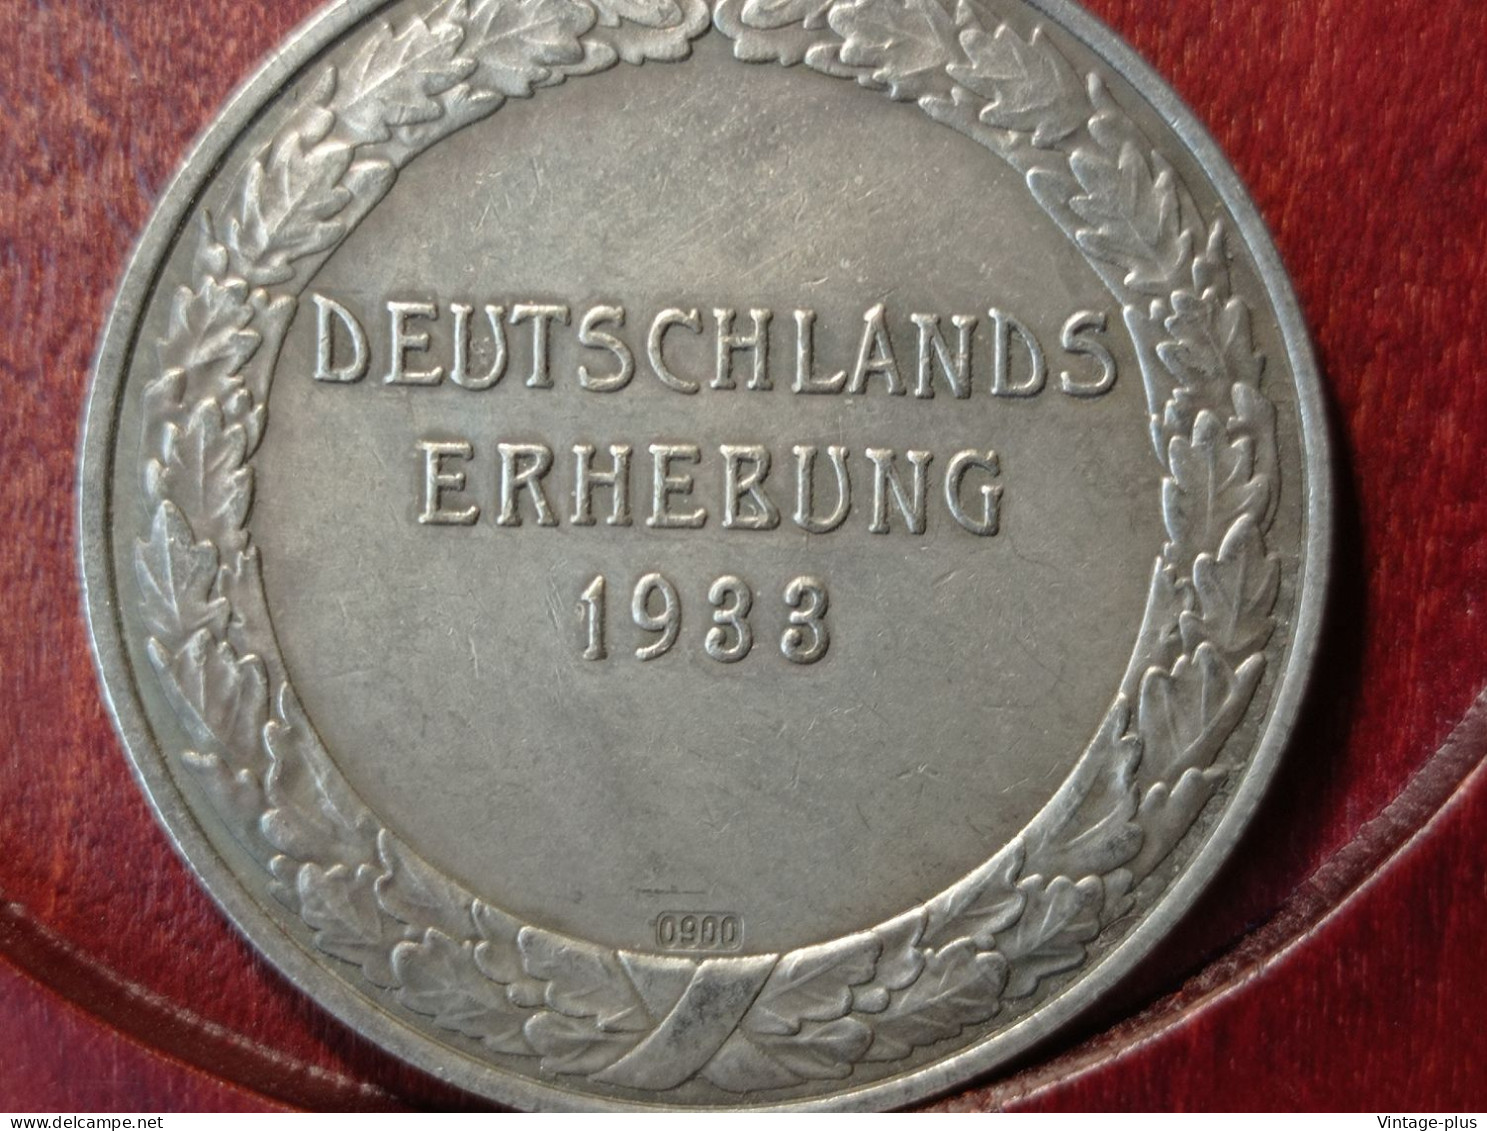 GERMANIA 3° REICH MONETA COMMEMORATIVA DEUTSCHLANDS ERHEBUNG1933 HITLER HINDENBURG  - ALLEMAGNE - DEUTSCHLAND - COD:AB8 - Otros – Europa